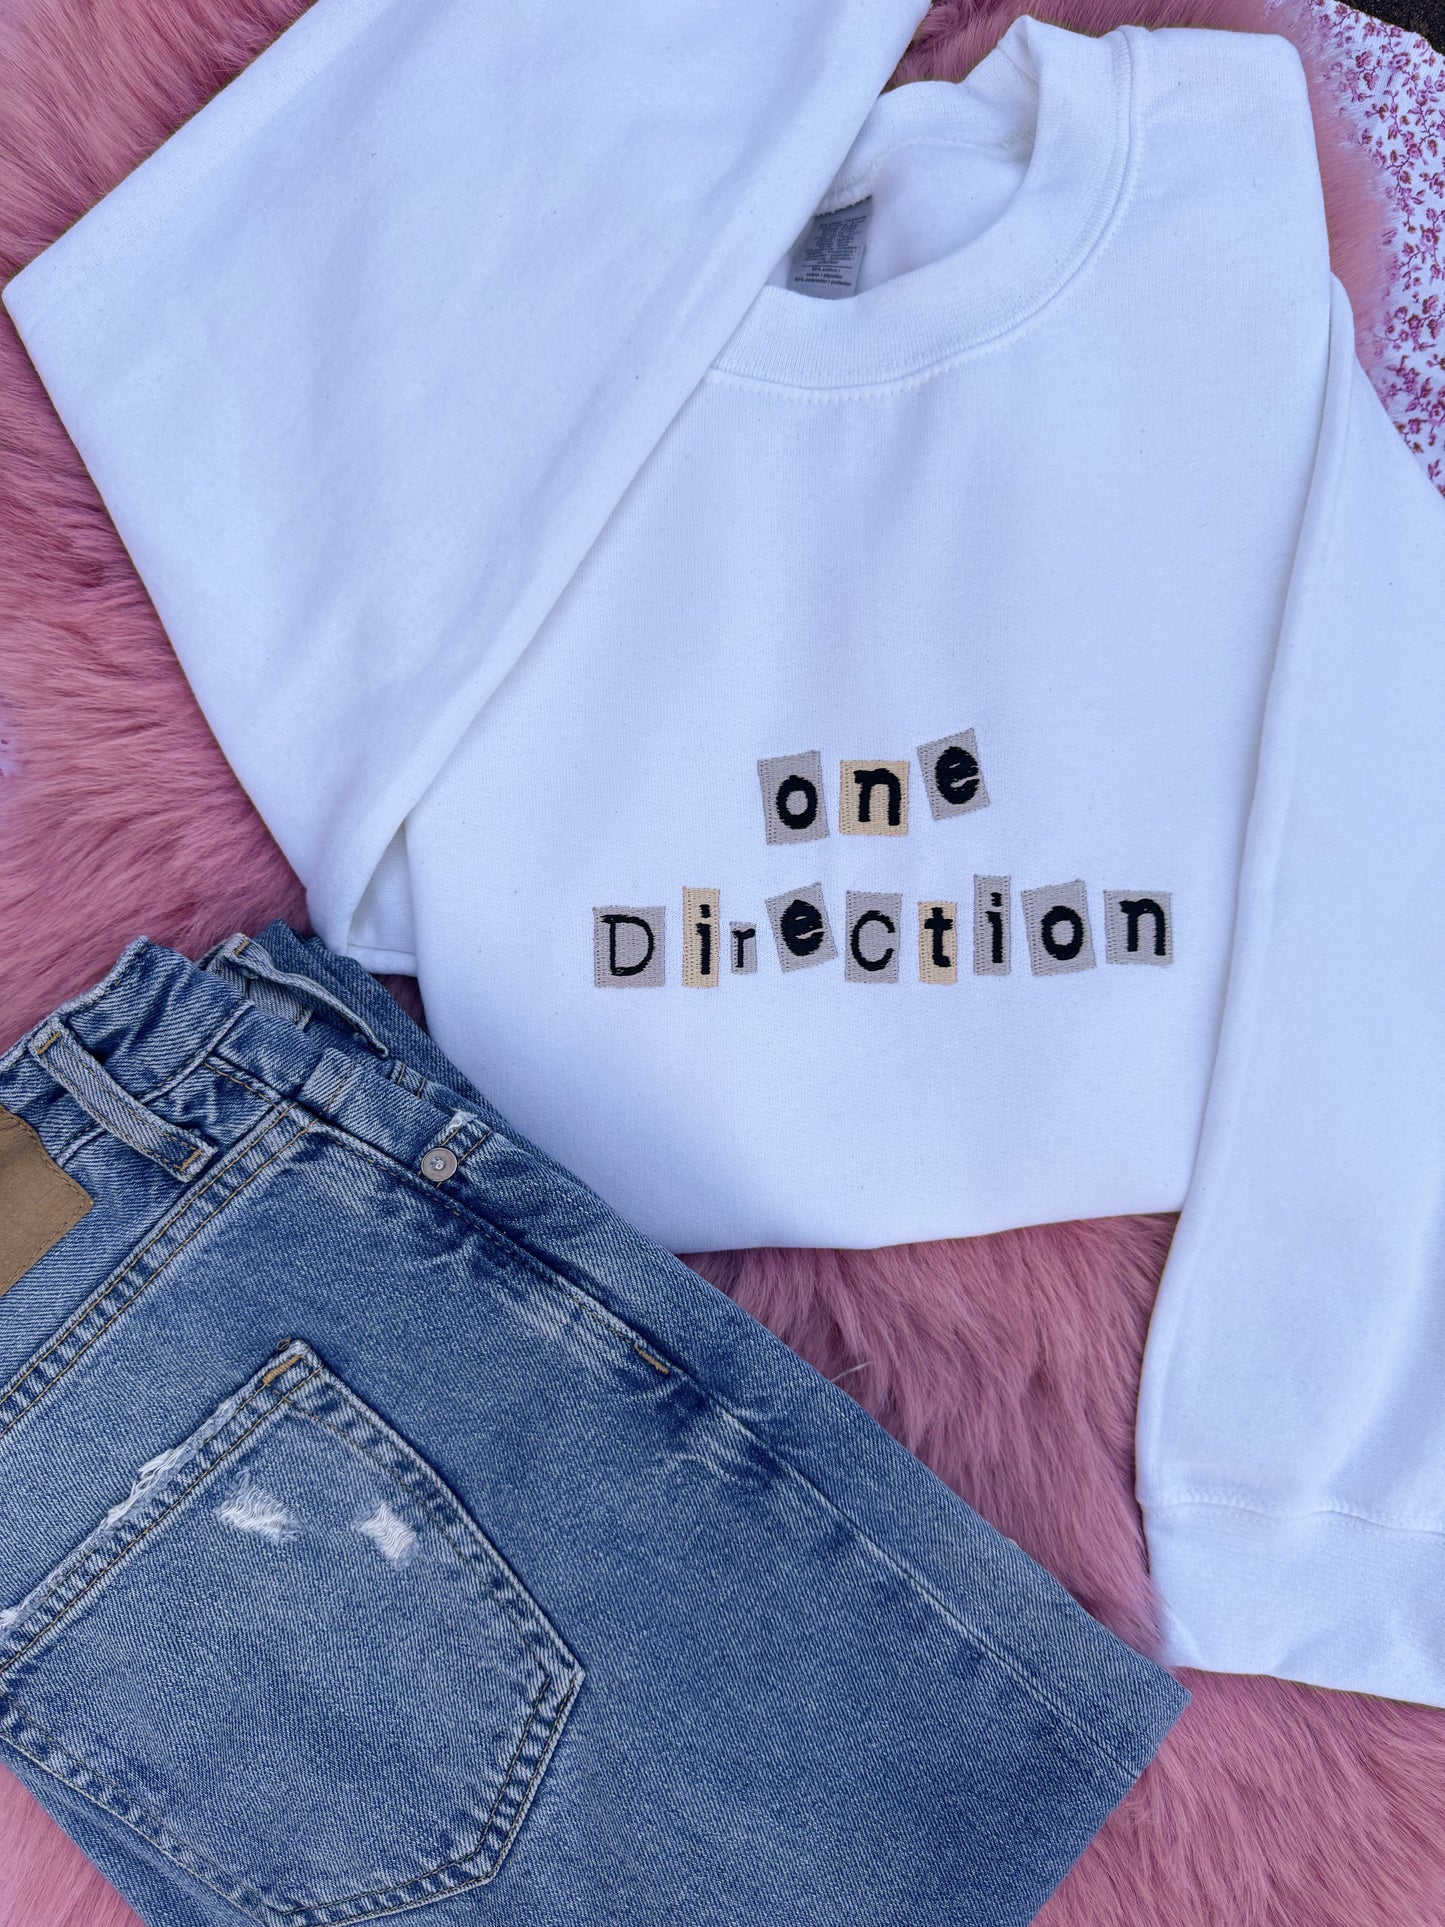 One Direction Retro Sweatshirt / Hoodie / T-Shirt